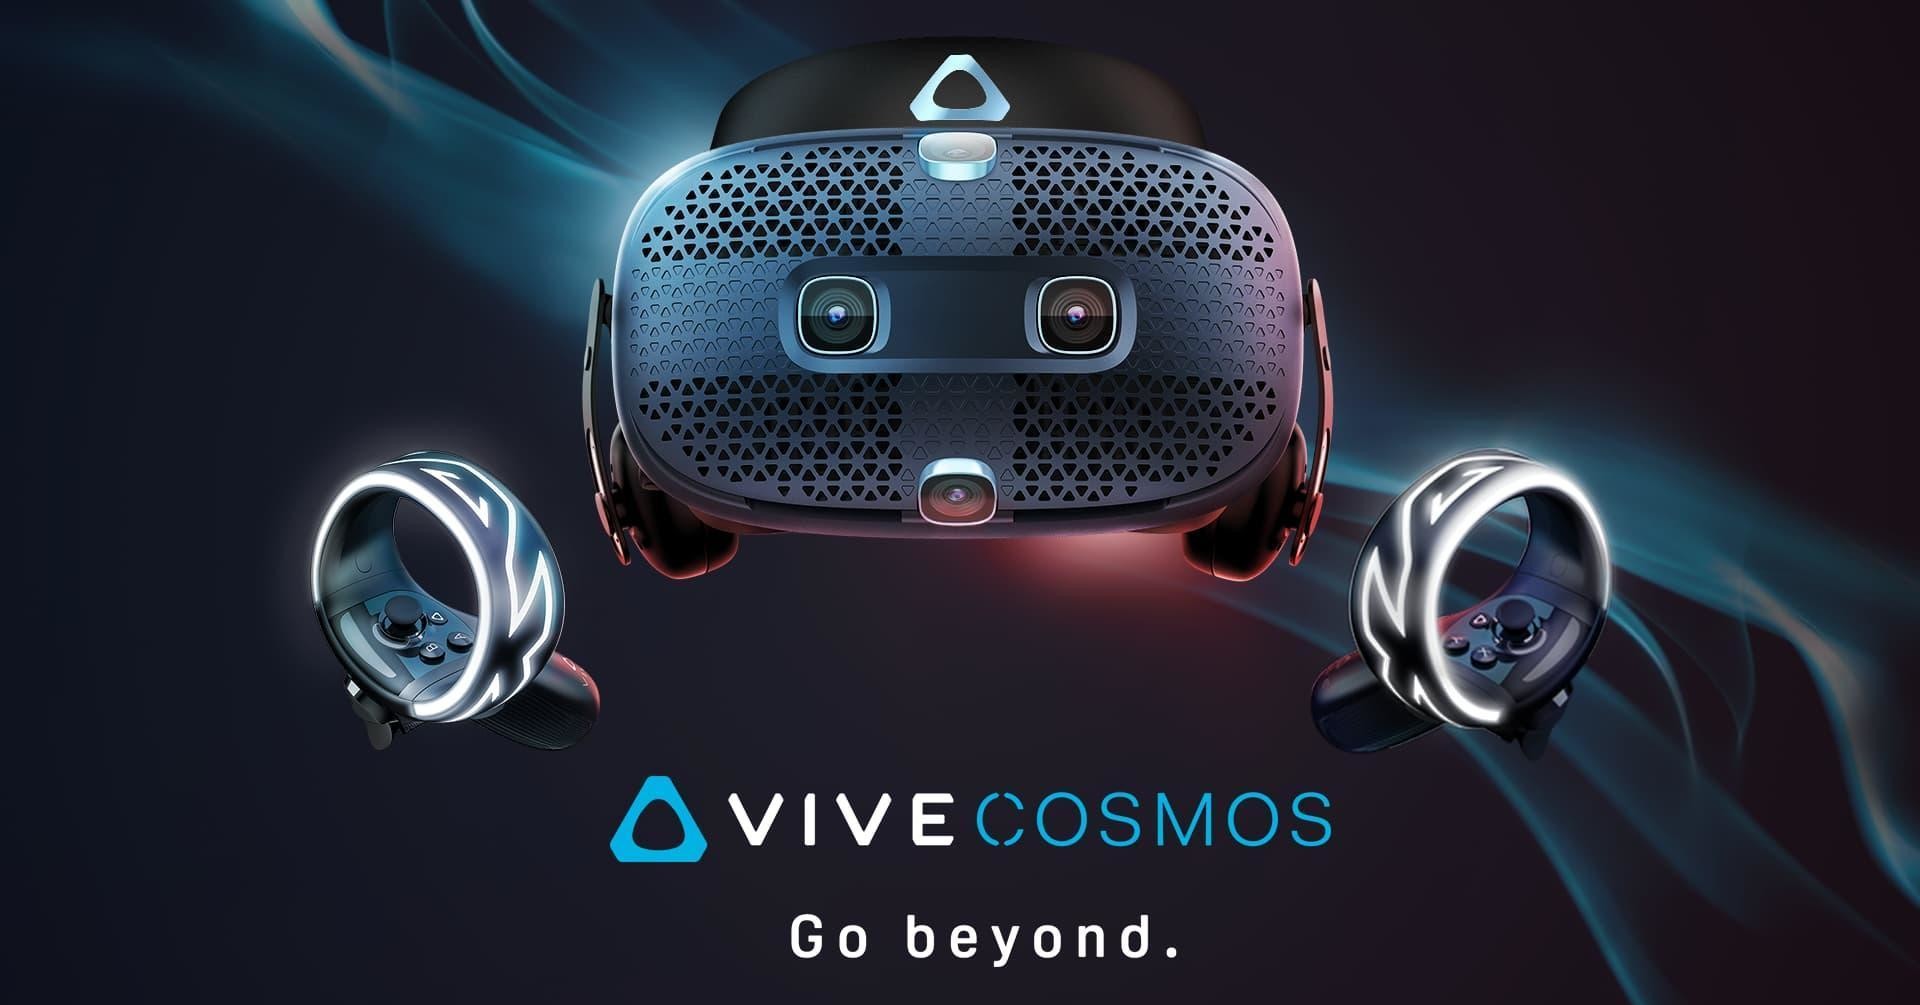 照片中提到了OVIVECOSMOS、Go beyond.，包含了HTC Vive、Oculus裂谷、HTC Vive宇宙、虛擬現實耳機、宏達電